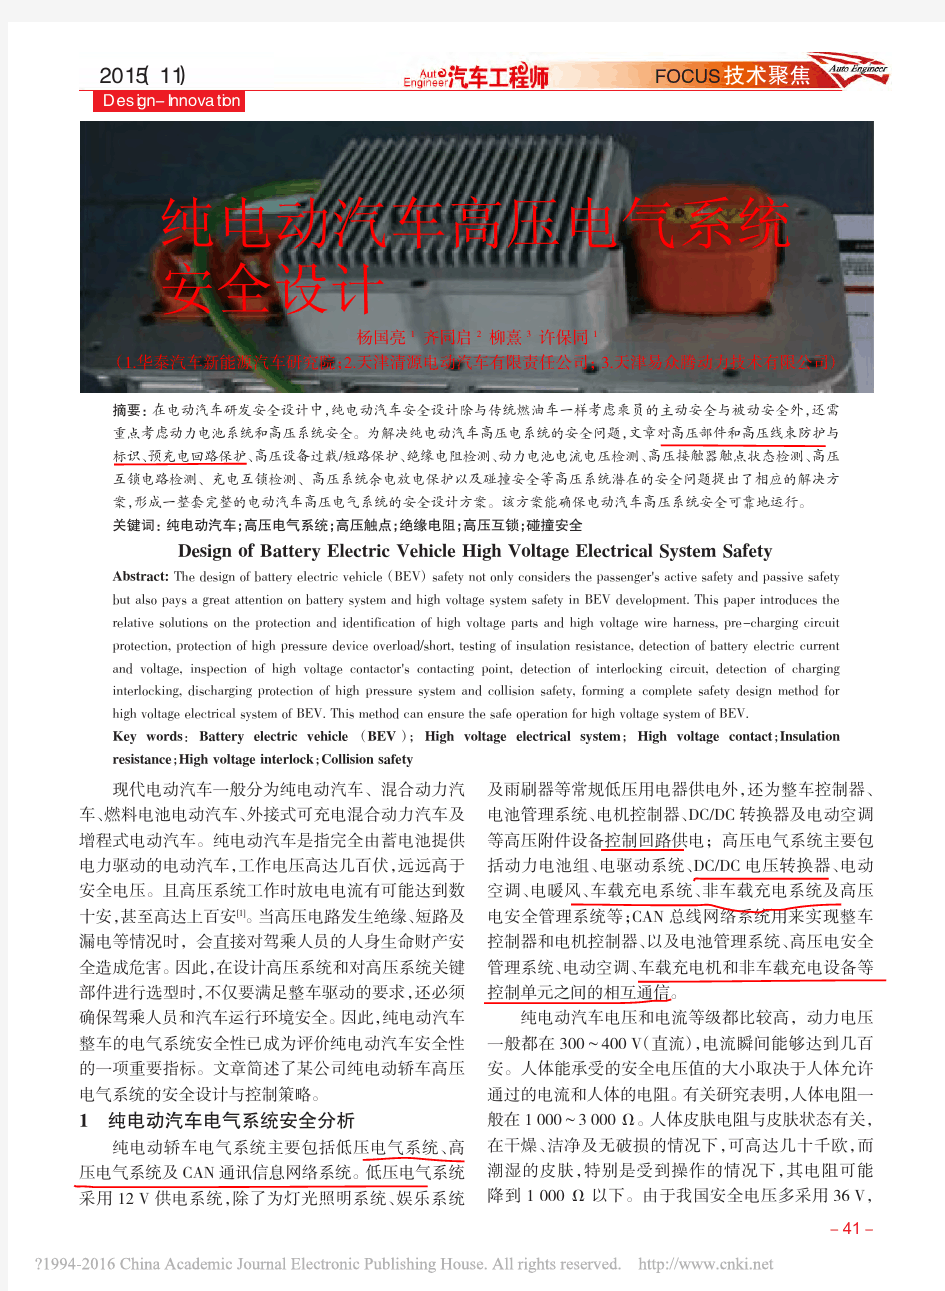 纯电动汽车高压电气系统安全设计_杨国亮